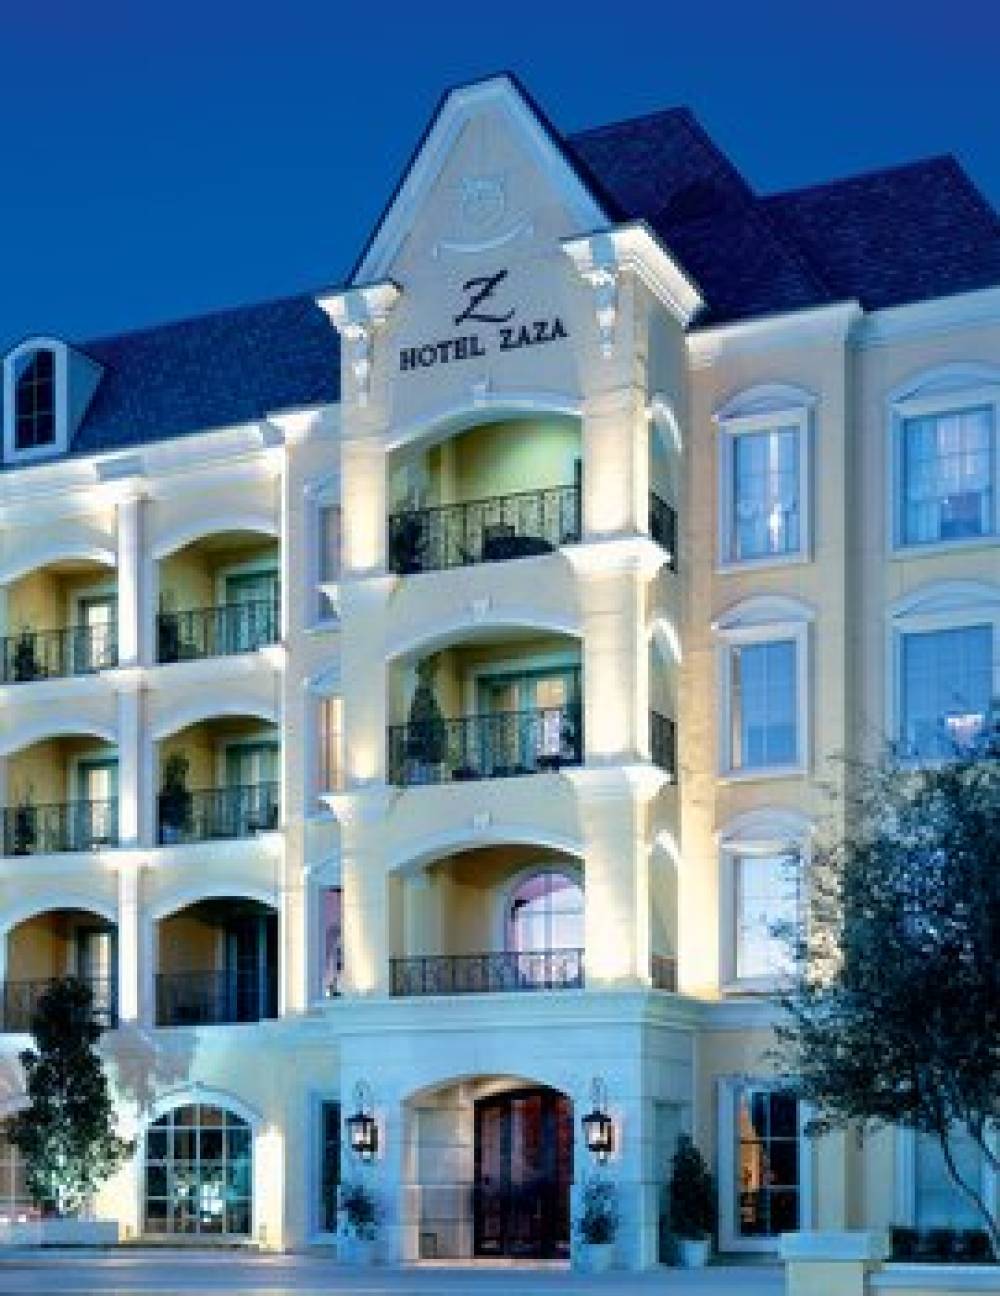 Hotel Zaza Uptown Dallas 1